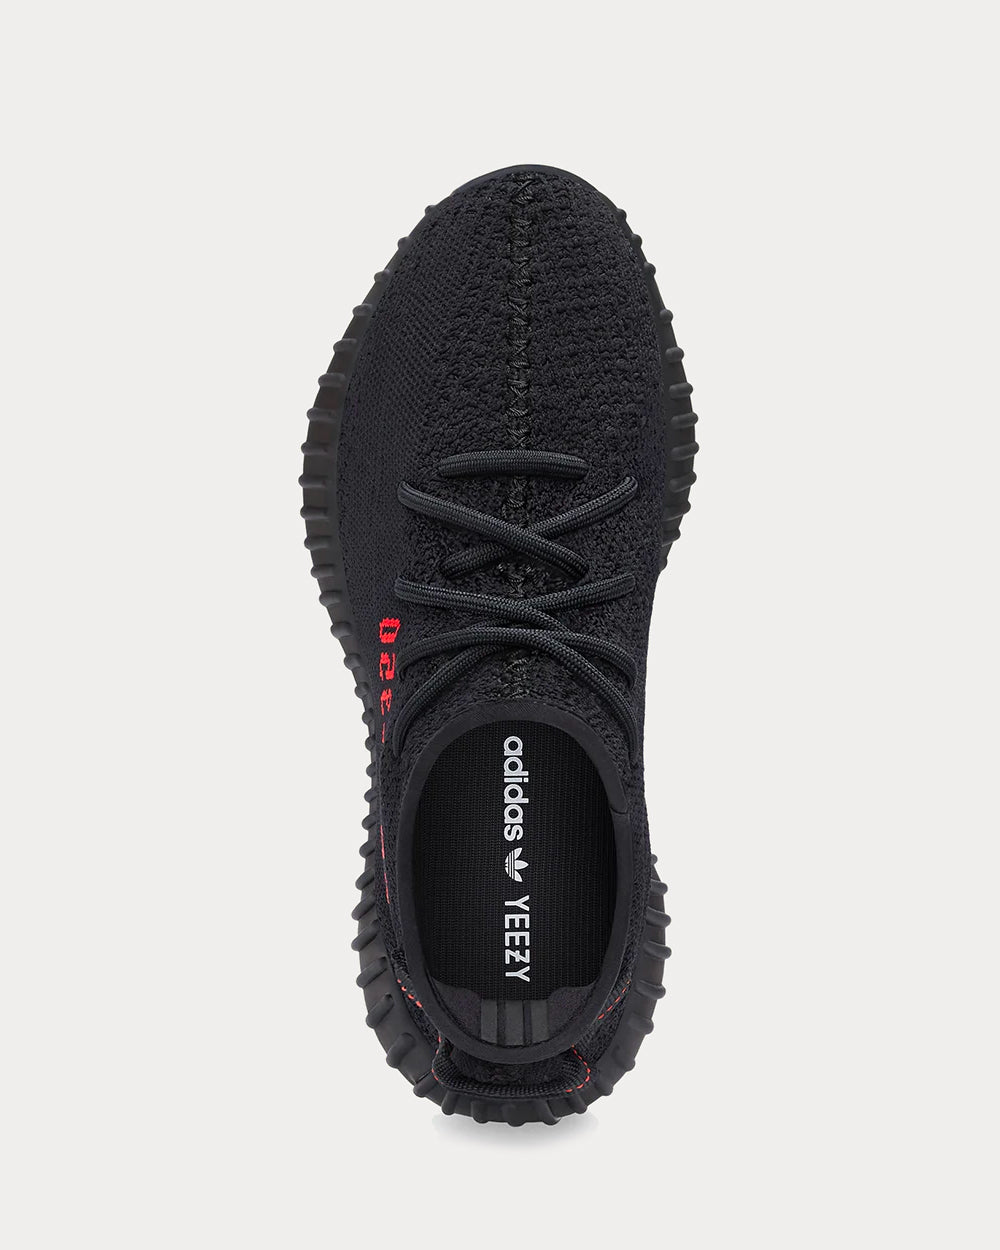 Yeezy Boost 350 V2 Core Black Low Top Sneakers - Sneak in Peace